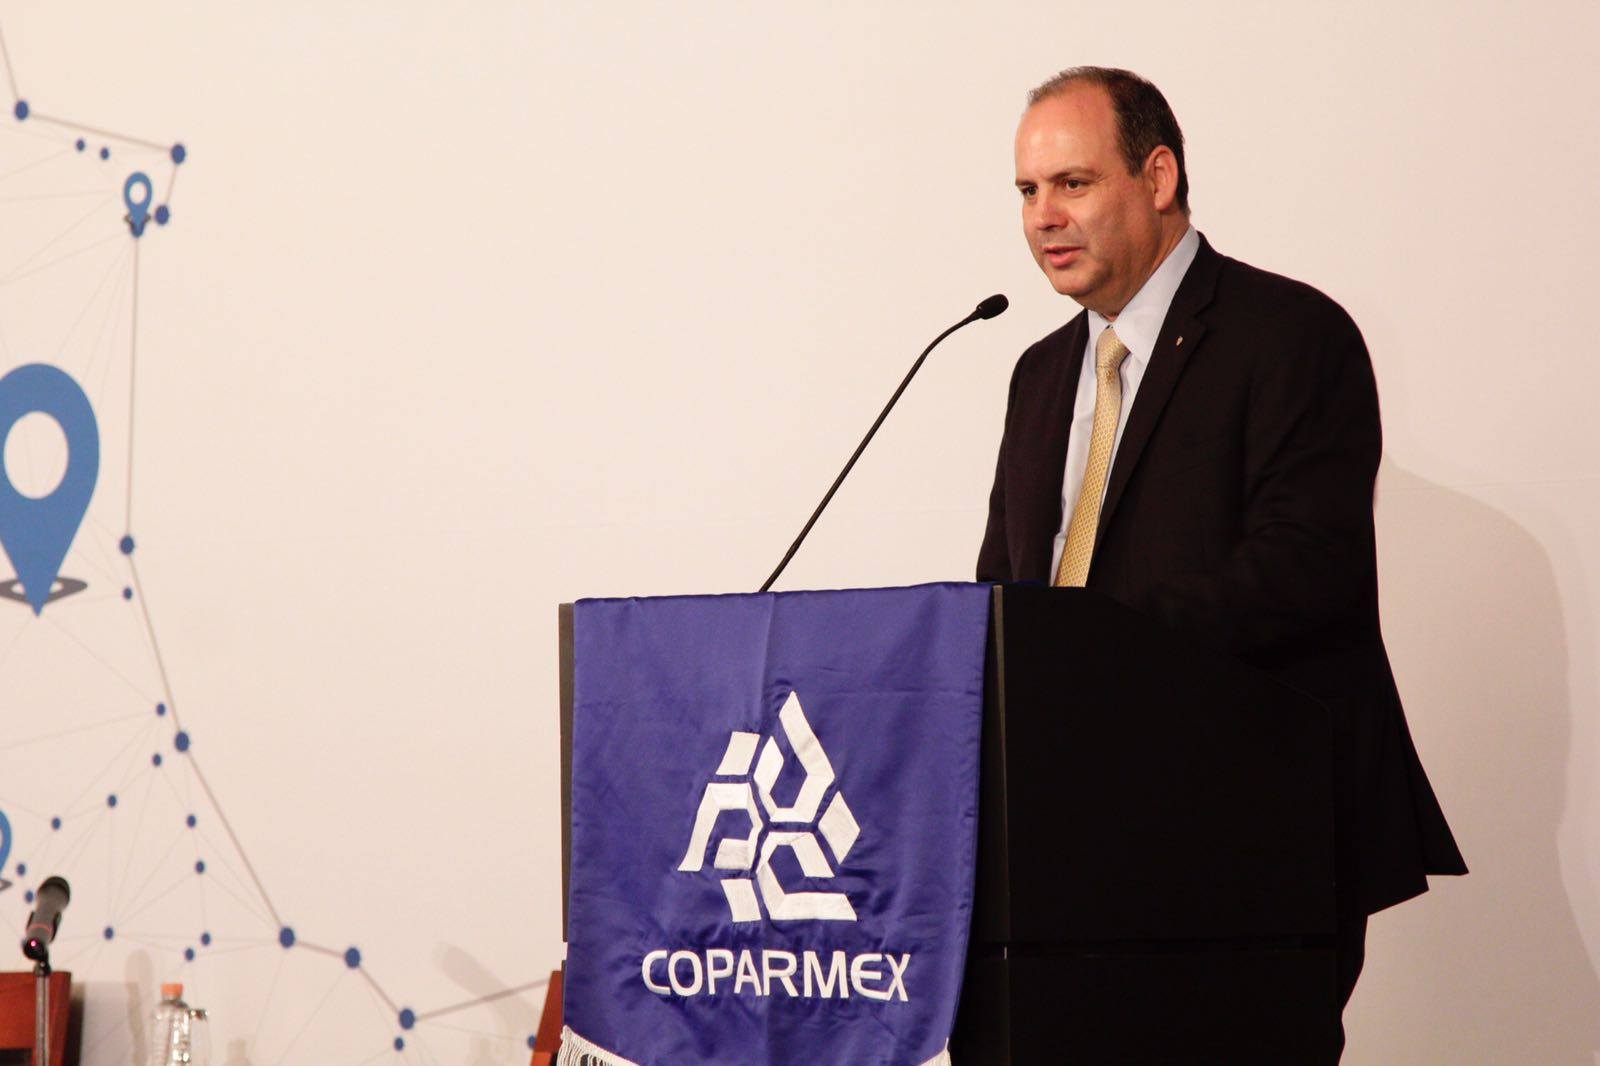 Coparmex apoya a AMLO, mantiene derecho a disentir: De Hoyos